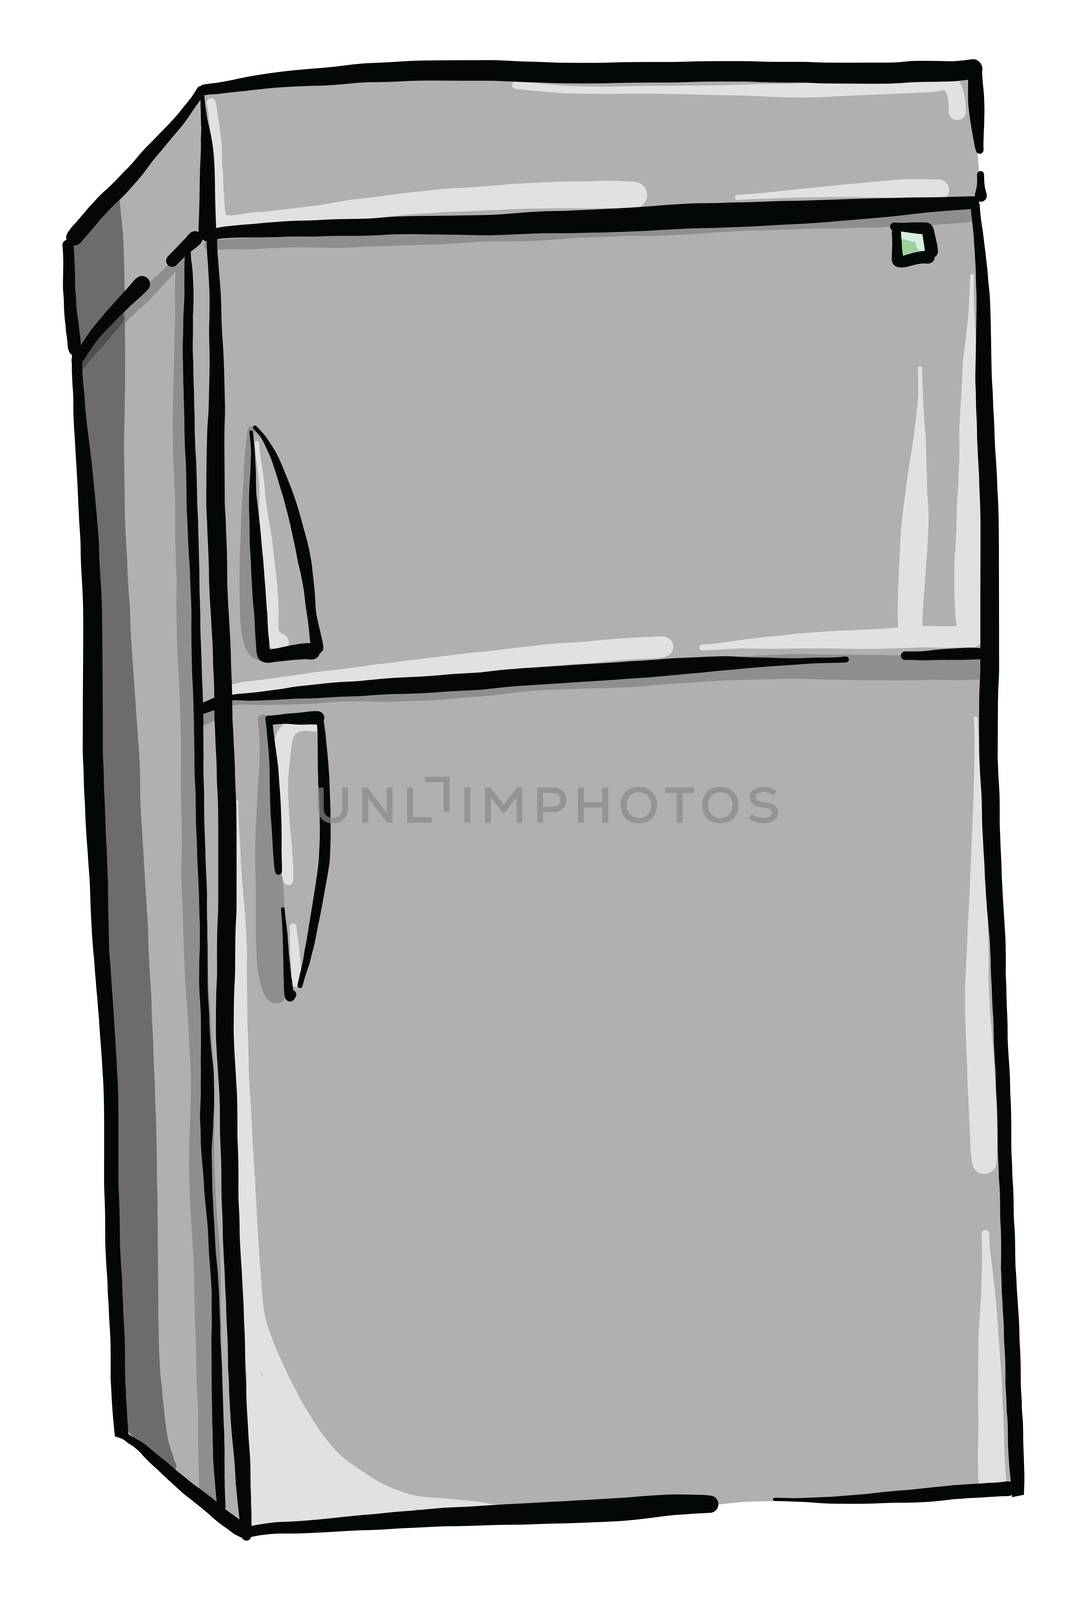 Gray fridge , illustration, vector on white background by Morphart